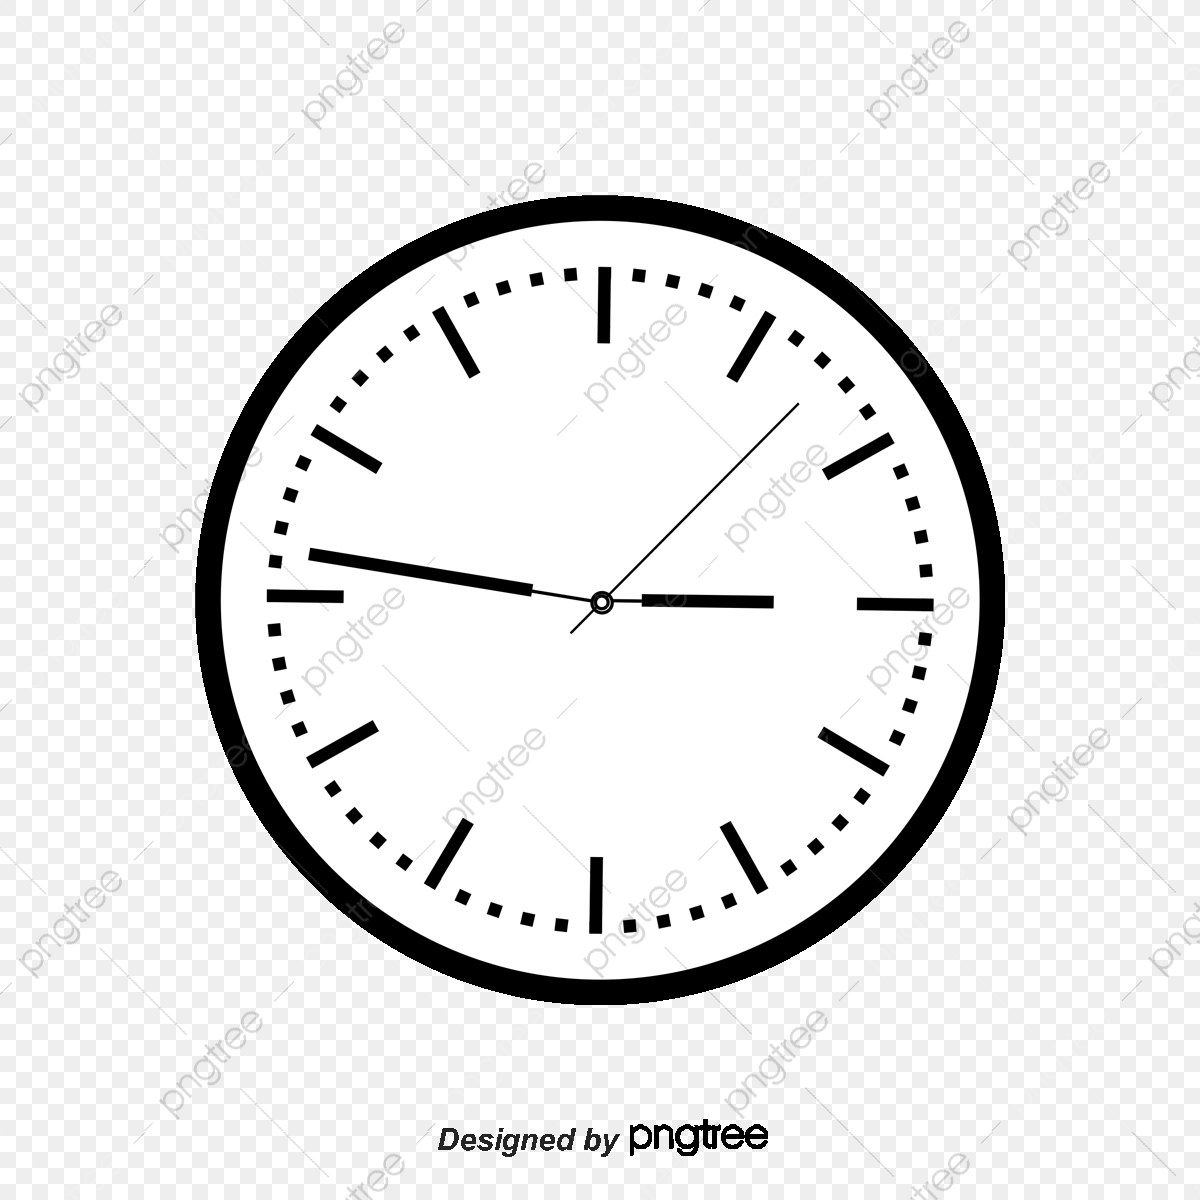 Le Dessin De L&amp;#039;Horloge, Vecteur De Dessin Animé, Vecteur D intérieur Dessin D Horloge